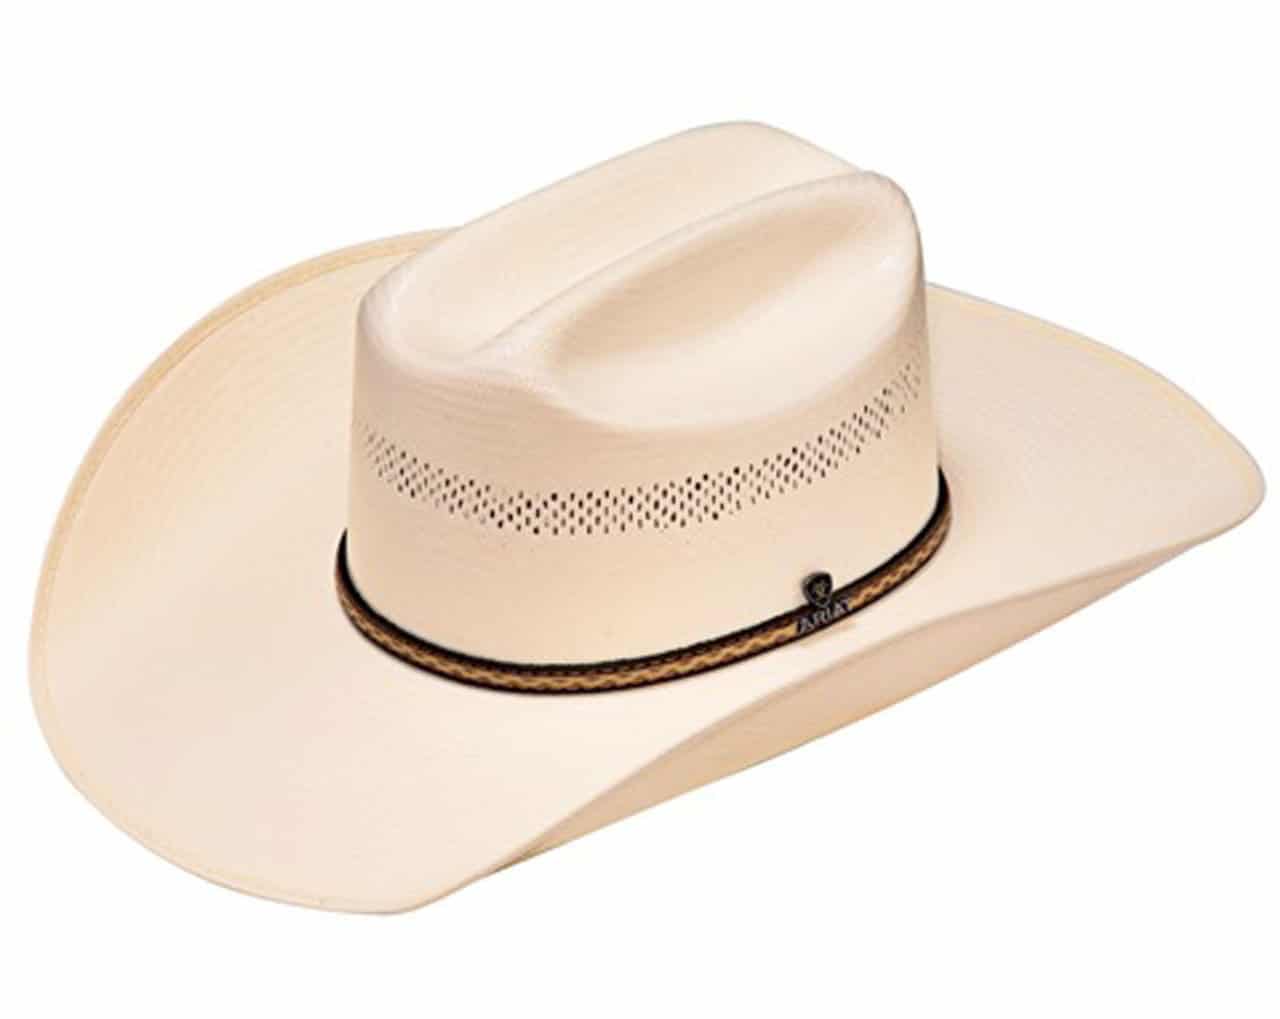 Ariat cowboy hat